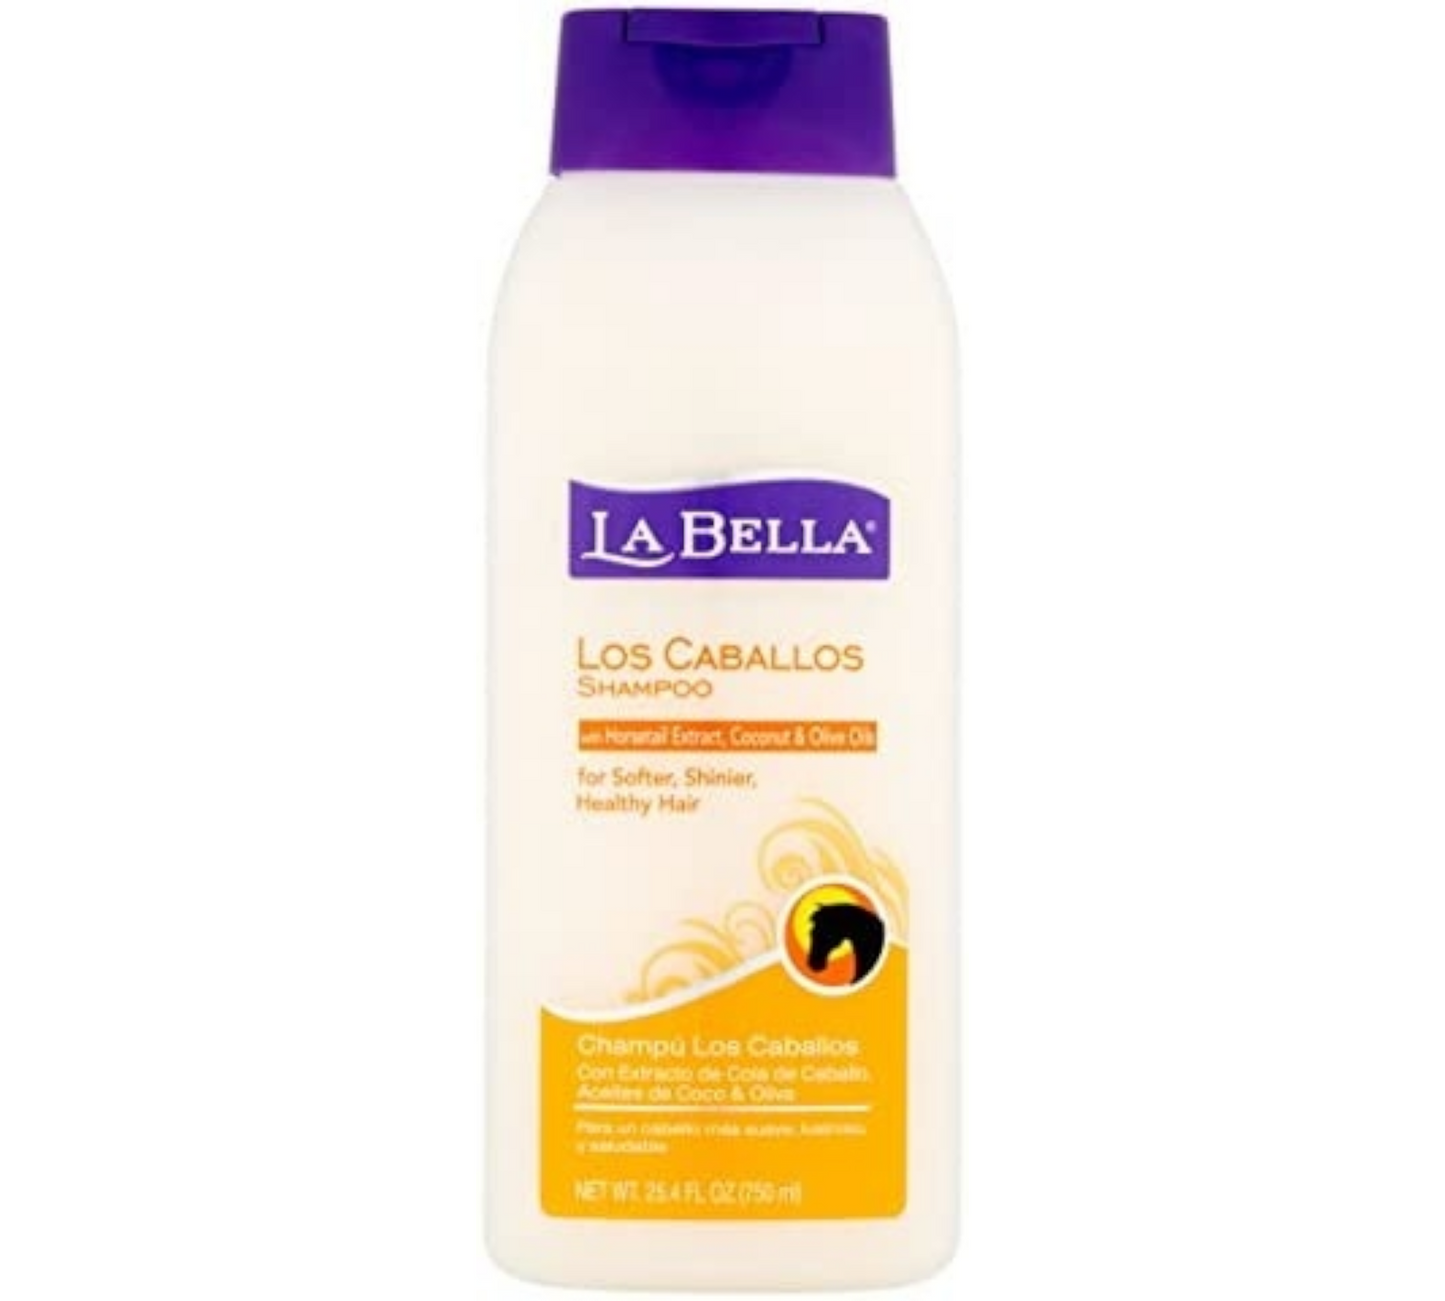 La Bella Cupid Beauty Supplies Shampoo La Bella Los Caballos Shampoo, 25.4 Oz